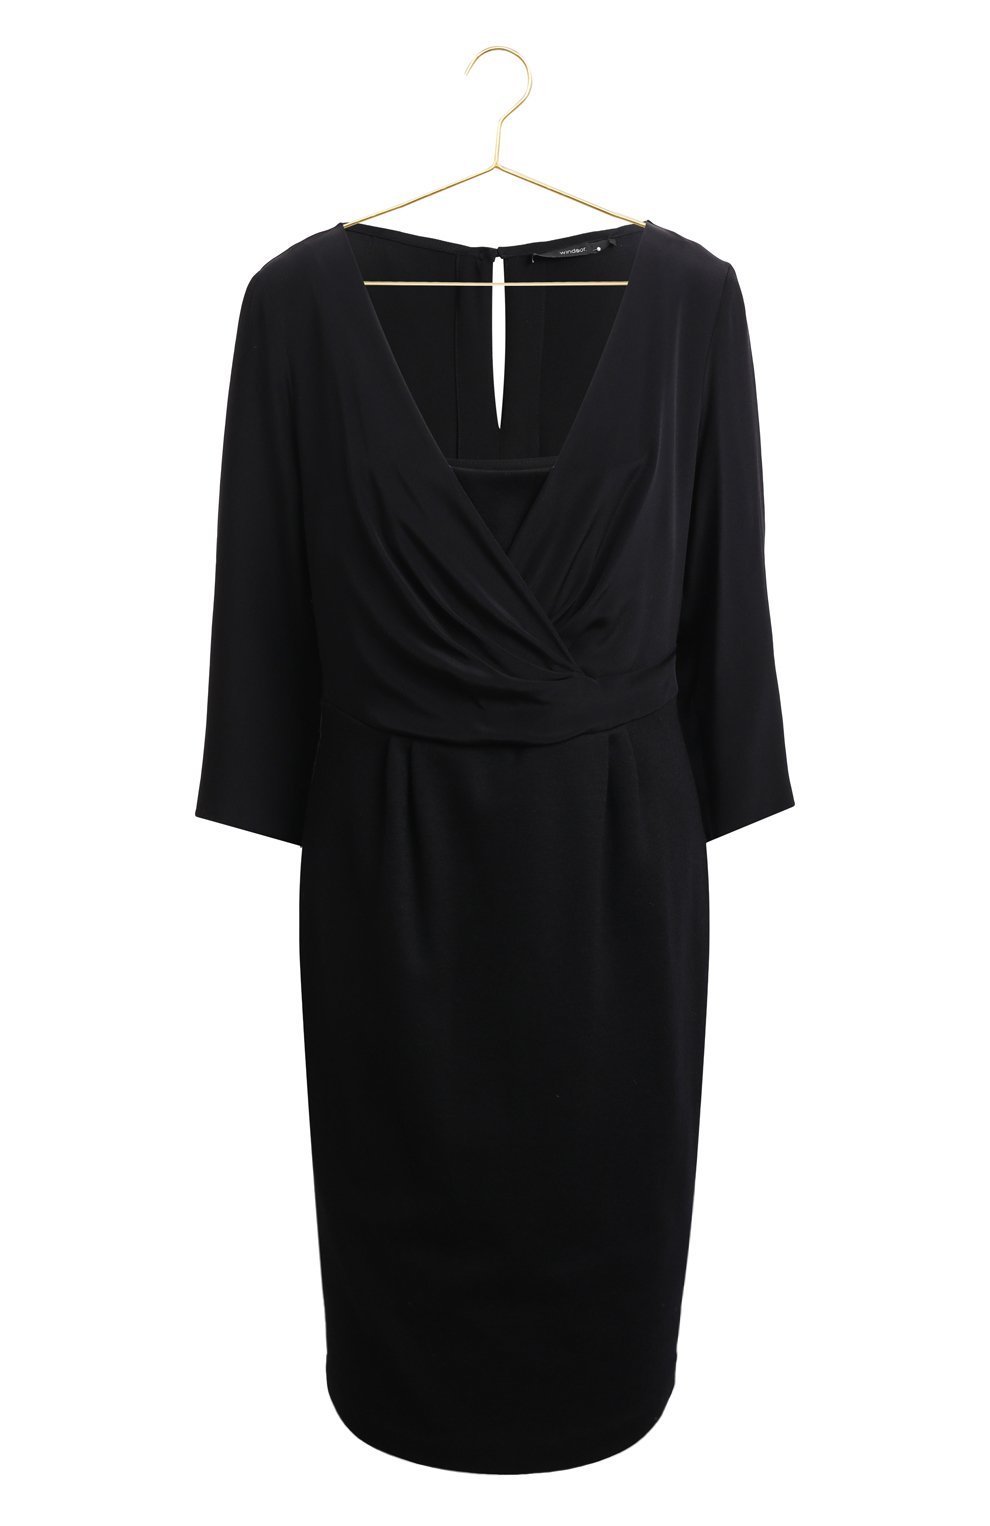 Платье из шелка и шерсти | Windsor | Чёрный - 1